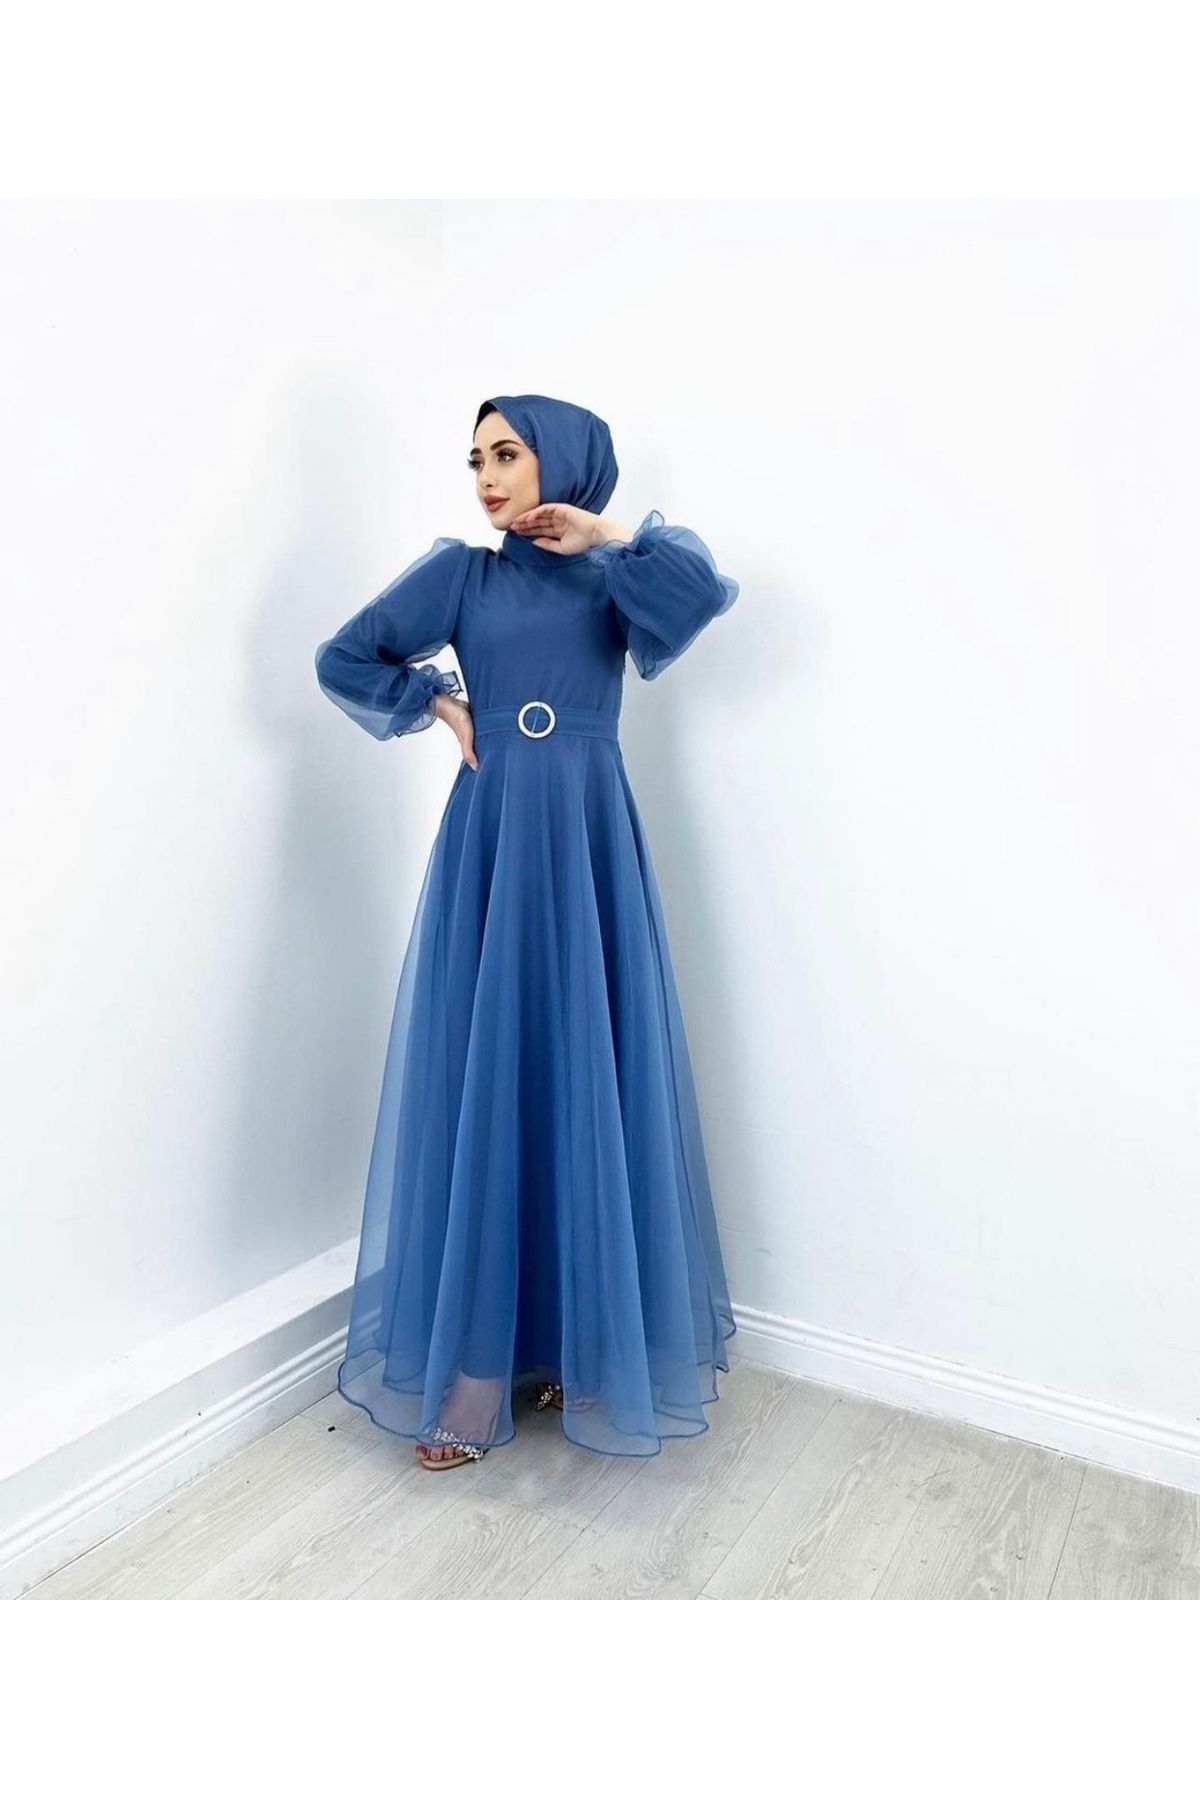 MERVEPLUME Tesettür Tül Abiye Elbise Belden Kemerli Tasarım Moda Düğün Şıklığı - Buz Mavisi